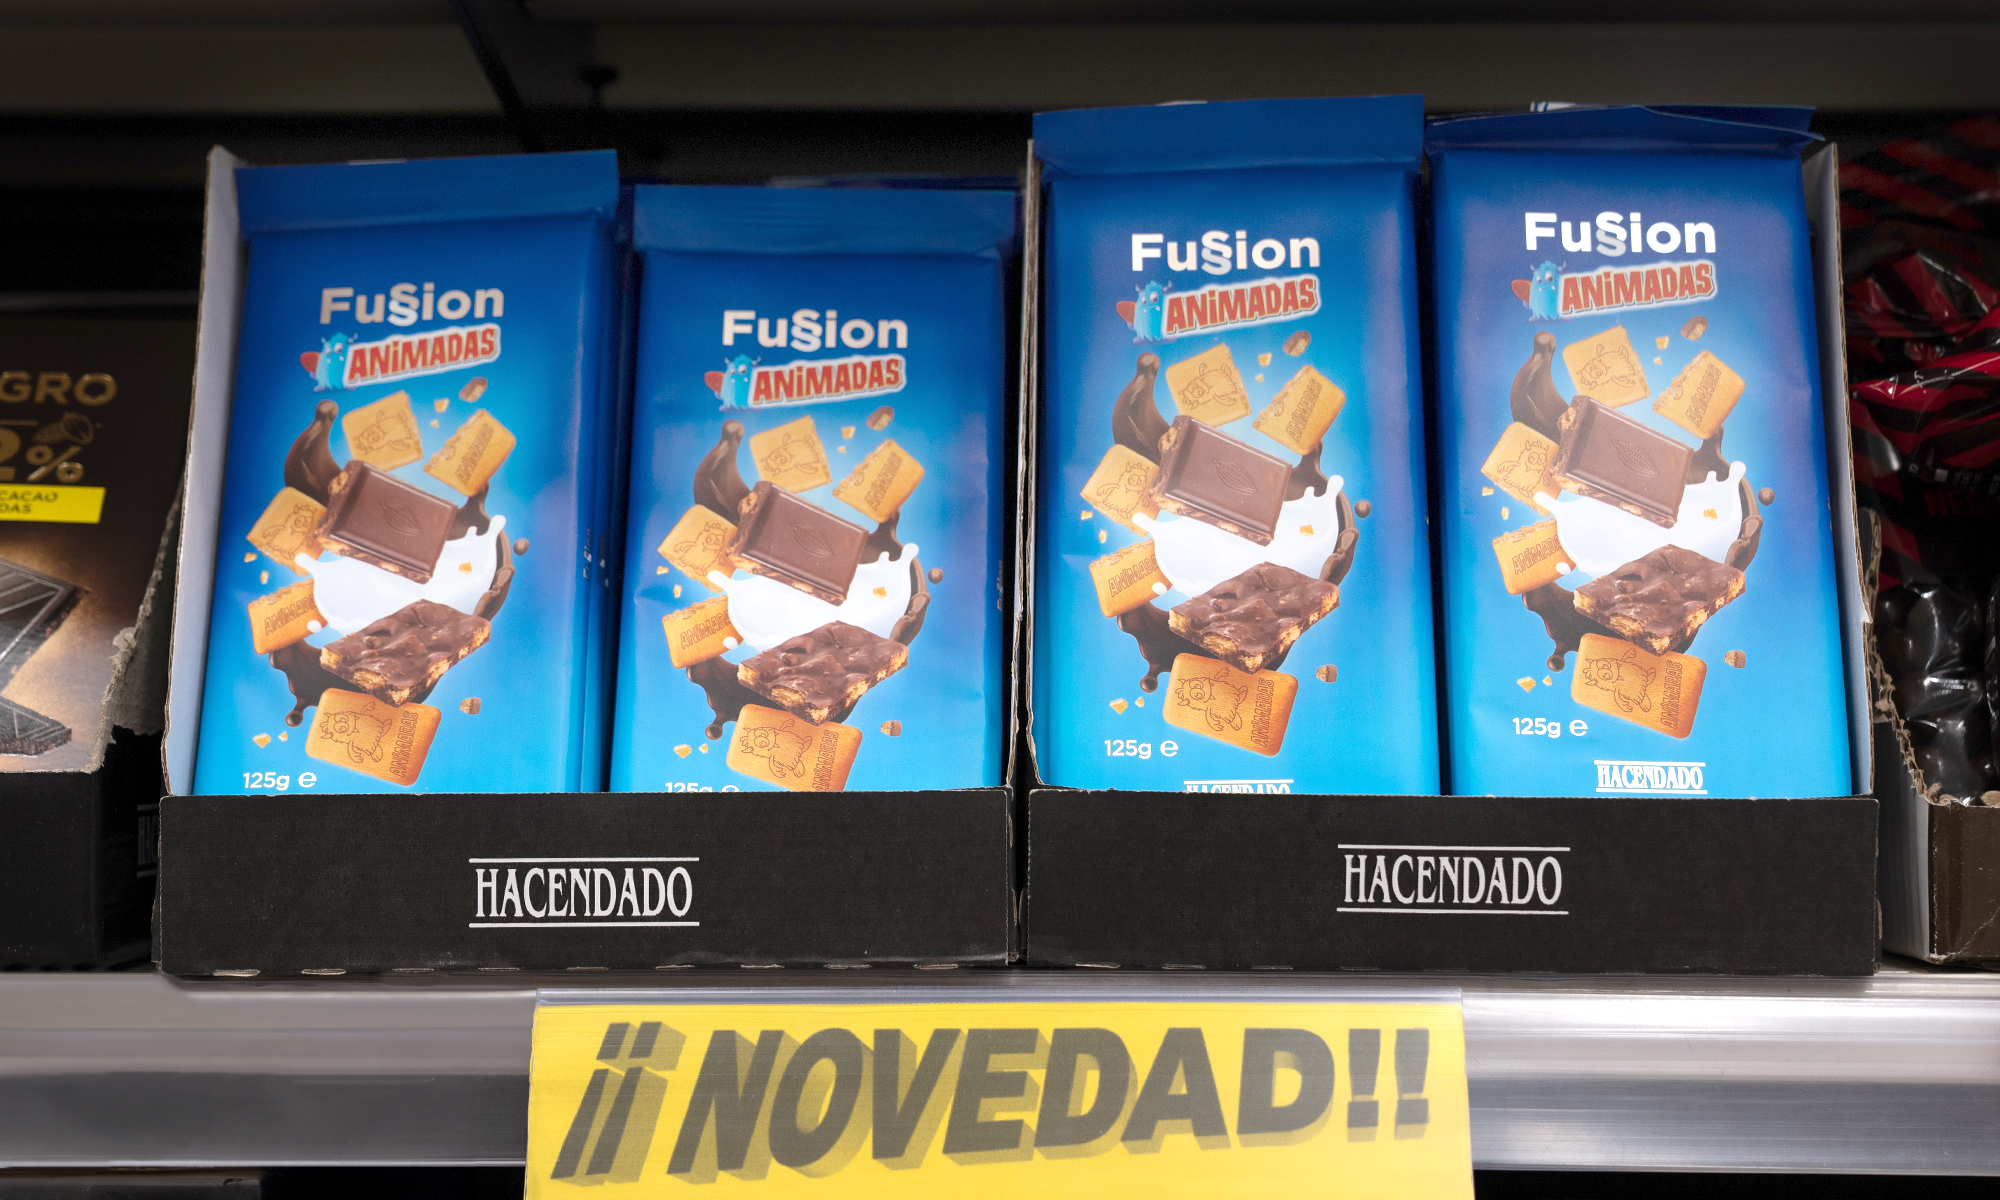 Mercadona innova al fusionar el chocolate con leche con sus galletas animadas